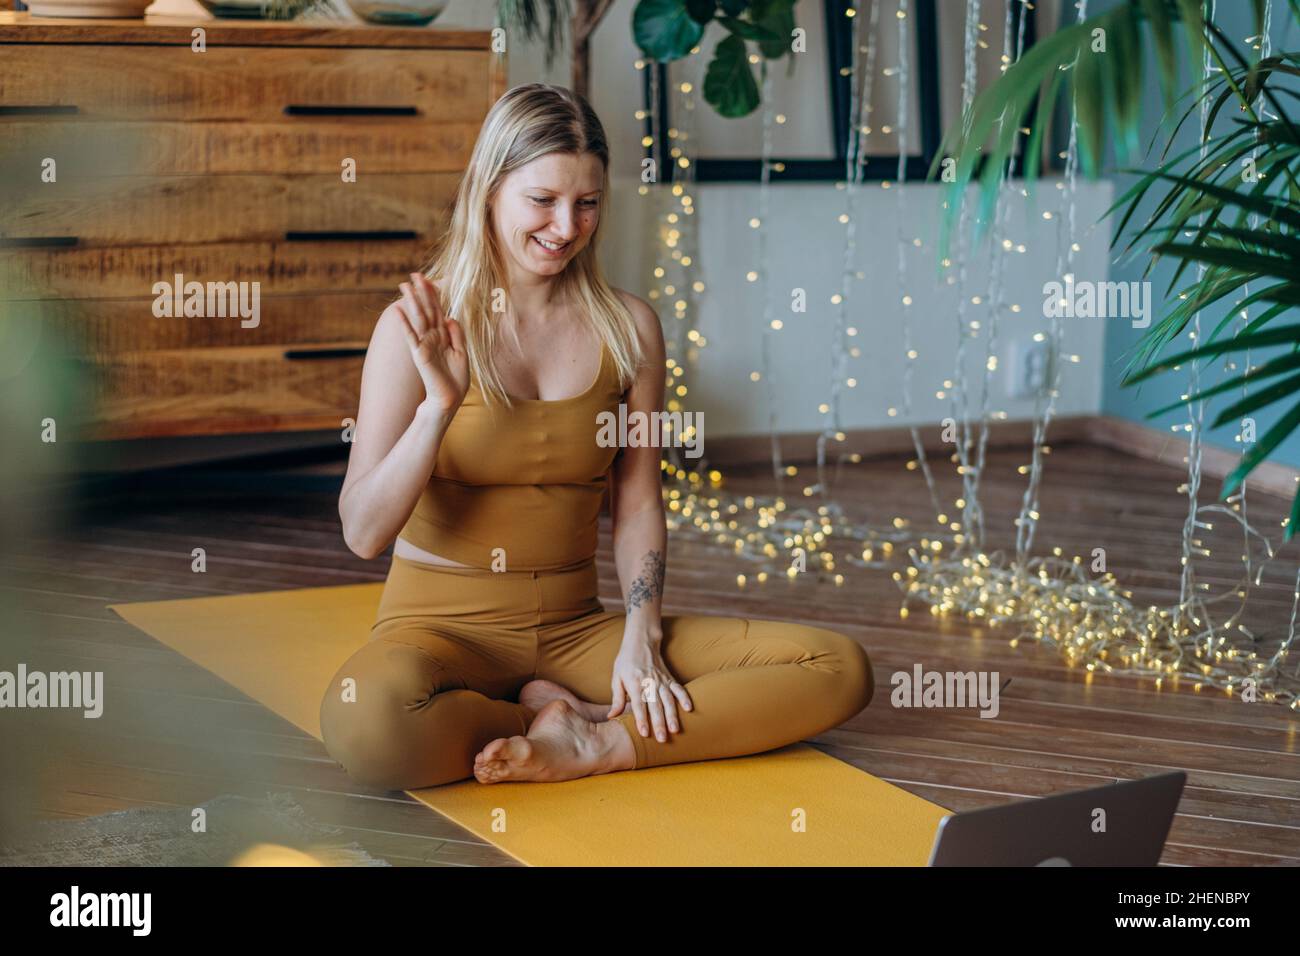 Mujer joven en la parte superior y leggings hace ejercicios de estiramiento en la colchoneta de yoga ver tutorial en el portátil contra iluminar la guirnalda Foto de stock